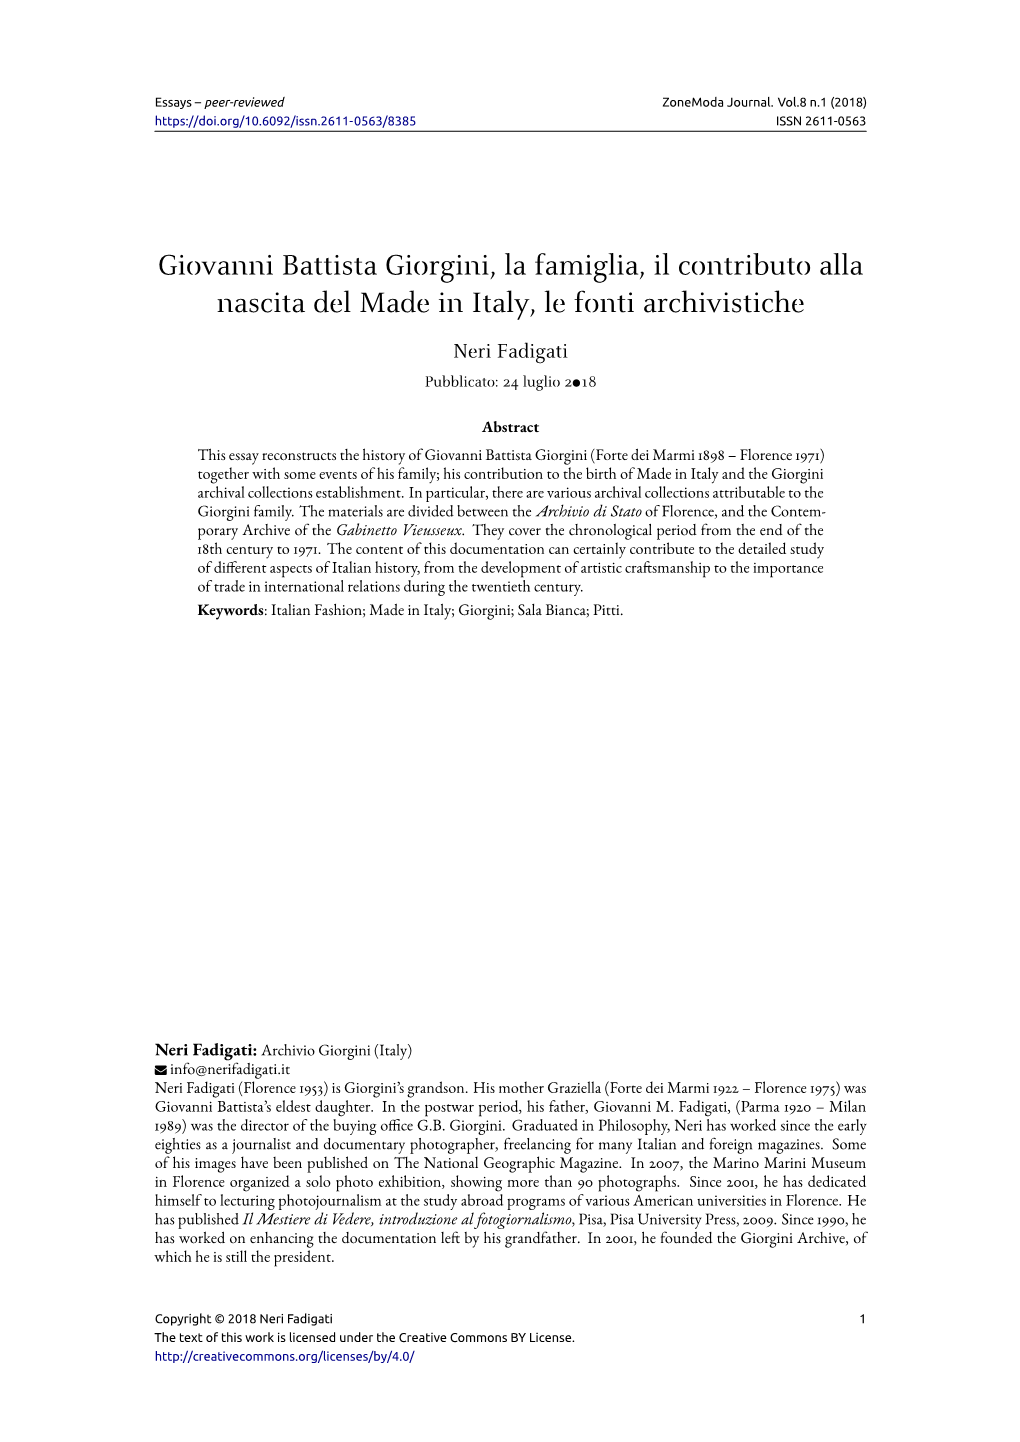 Giovanni Battista Giorgini, La Famiglia, Il Contributo Alla Nascita Del Made in Italy, Le Fonti Archivistiche